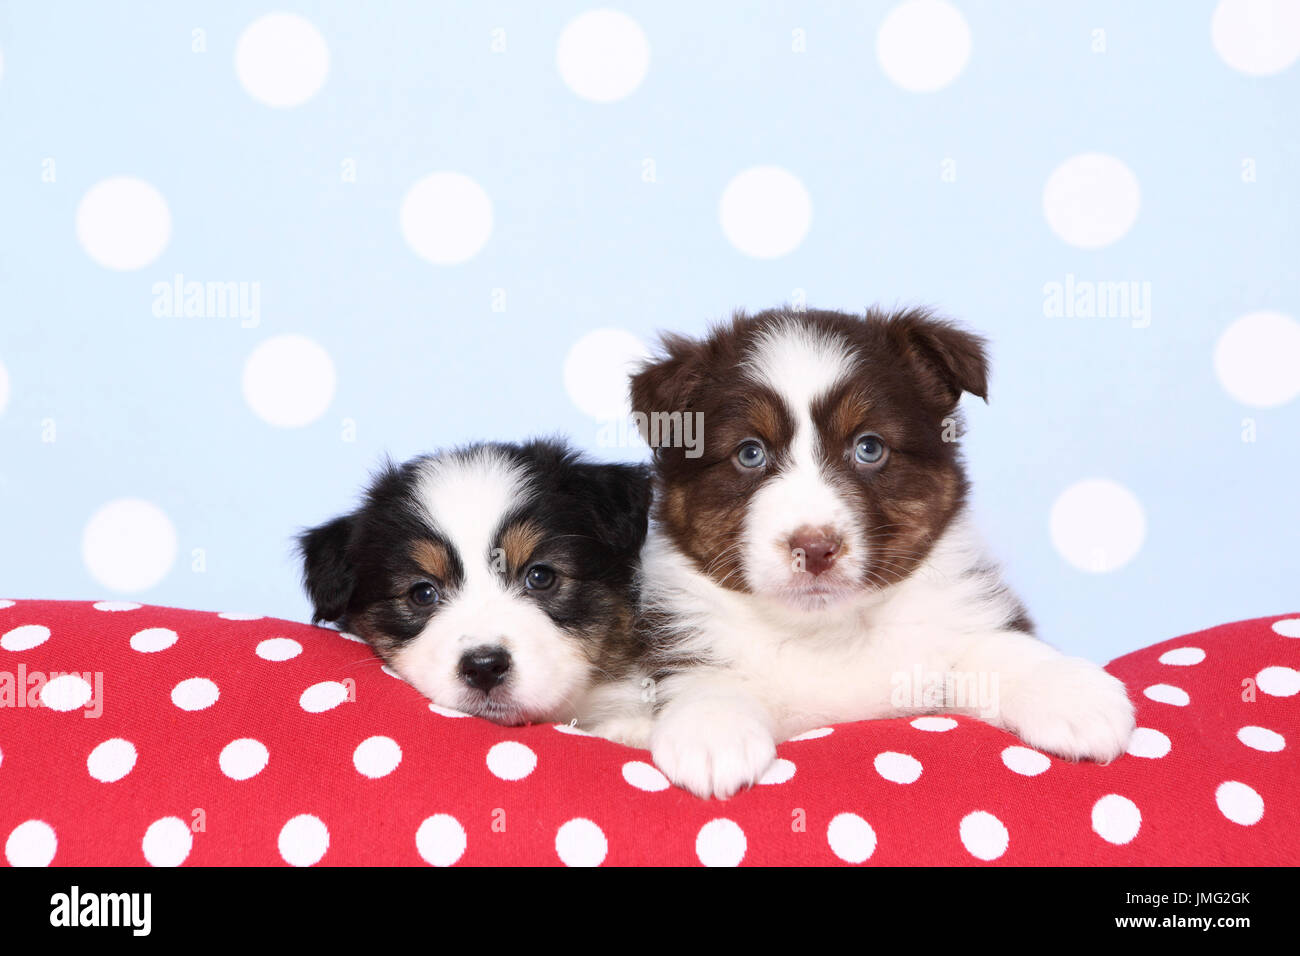 Pastore australiano. Due cuccioli (6 settimane di età) giacente su un rosso cushiont con il bianco a pois. Studio Immagine contro uno sfondo blu con il bianco a pois. Germania Foto Stock